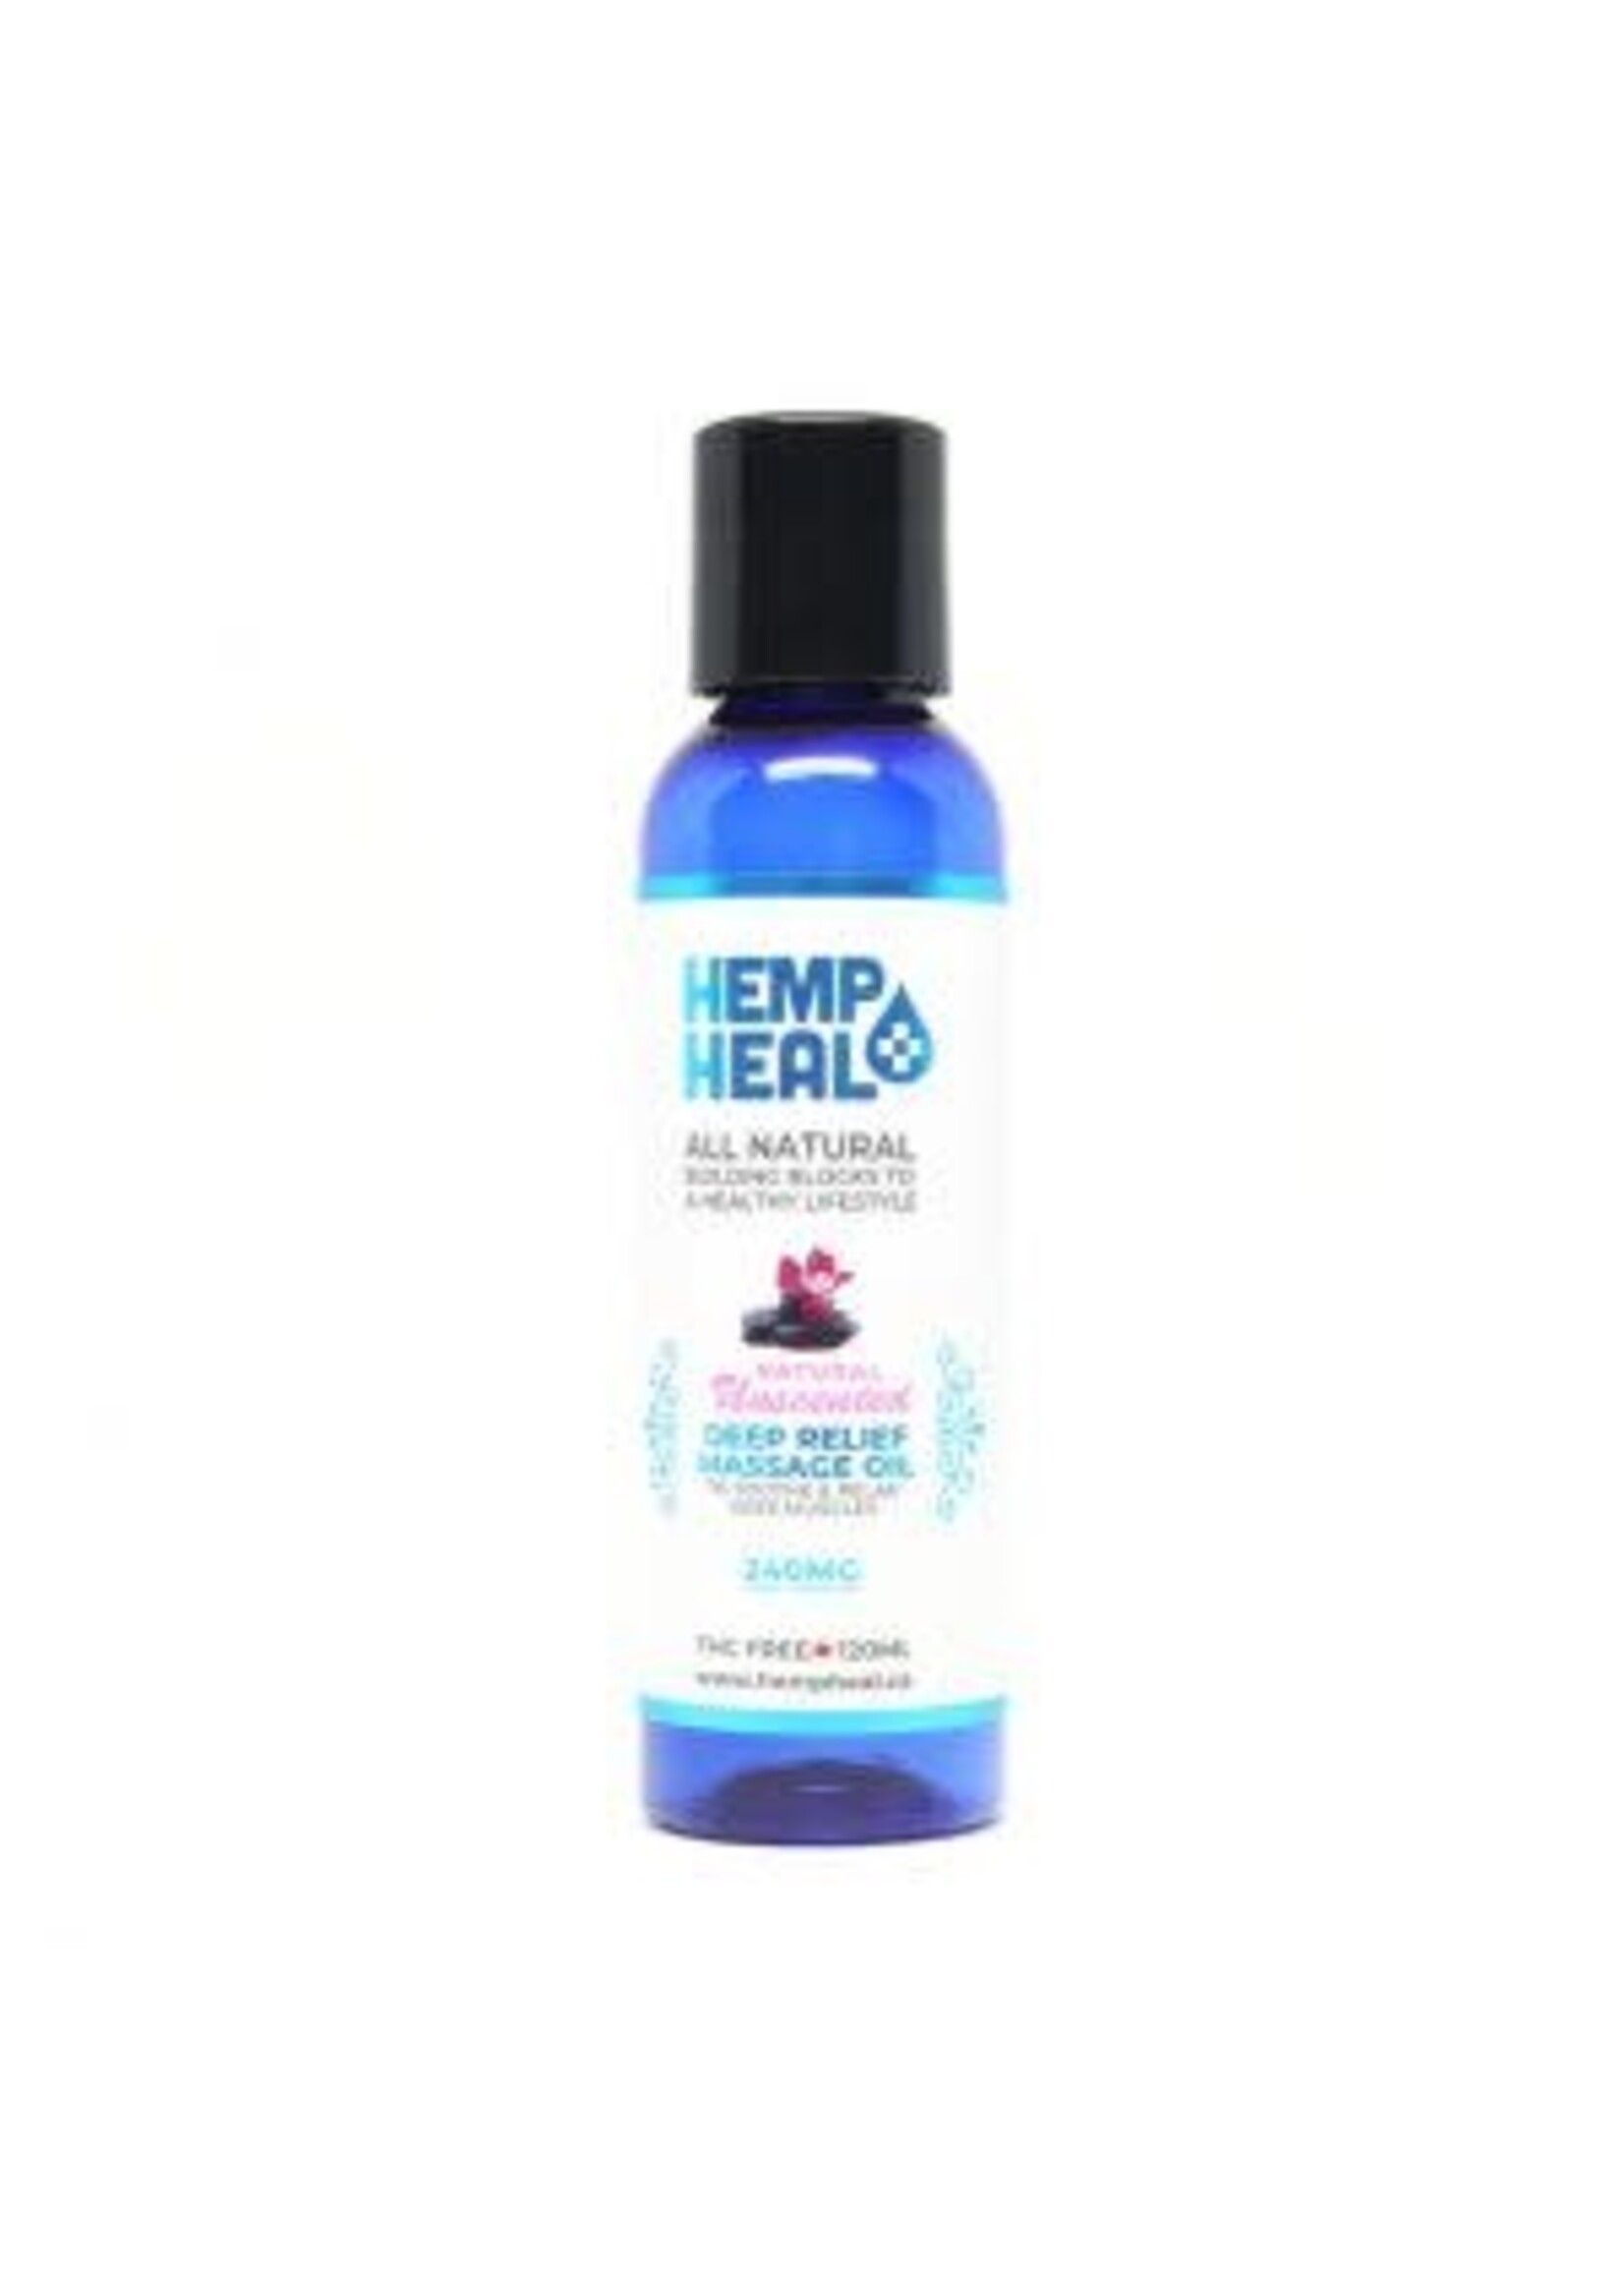 Hemp Heal Hemp Heal Deep Relief Massage Oil Unscented 240MG 120ml